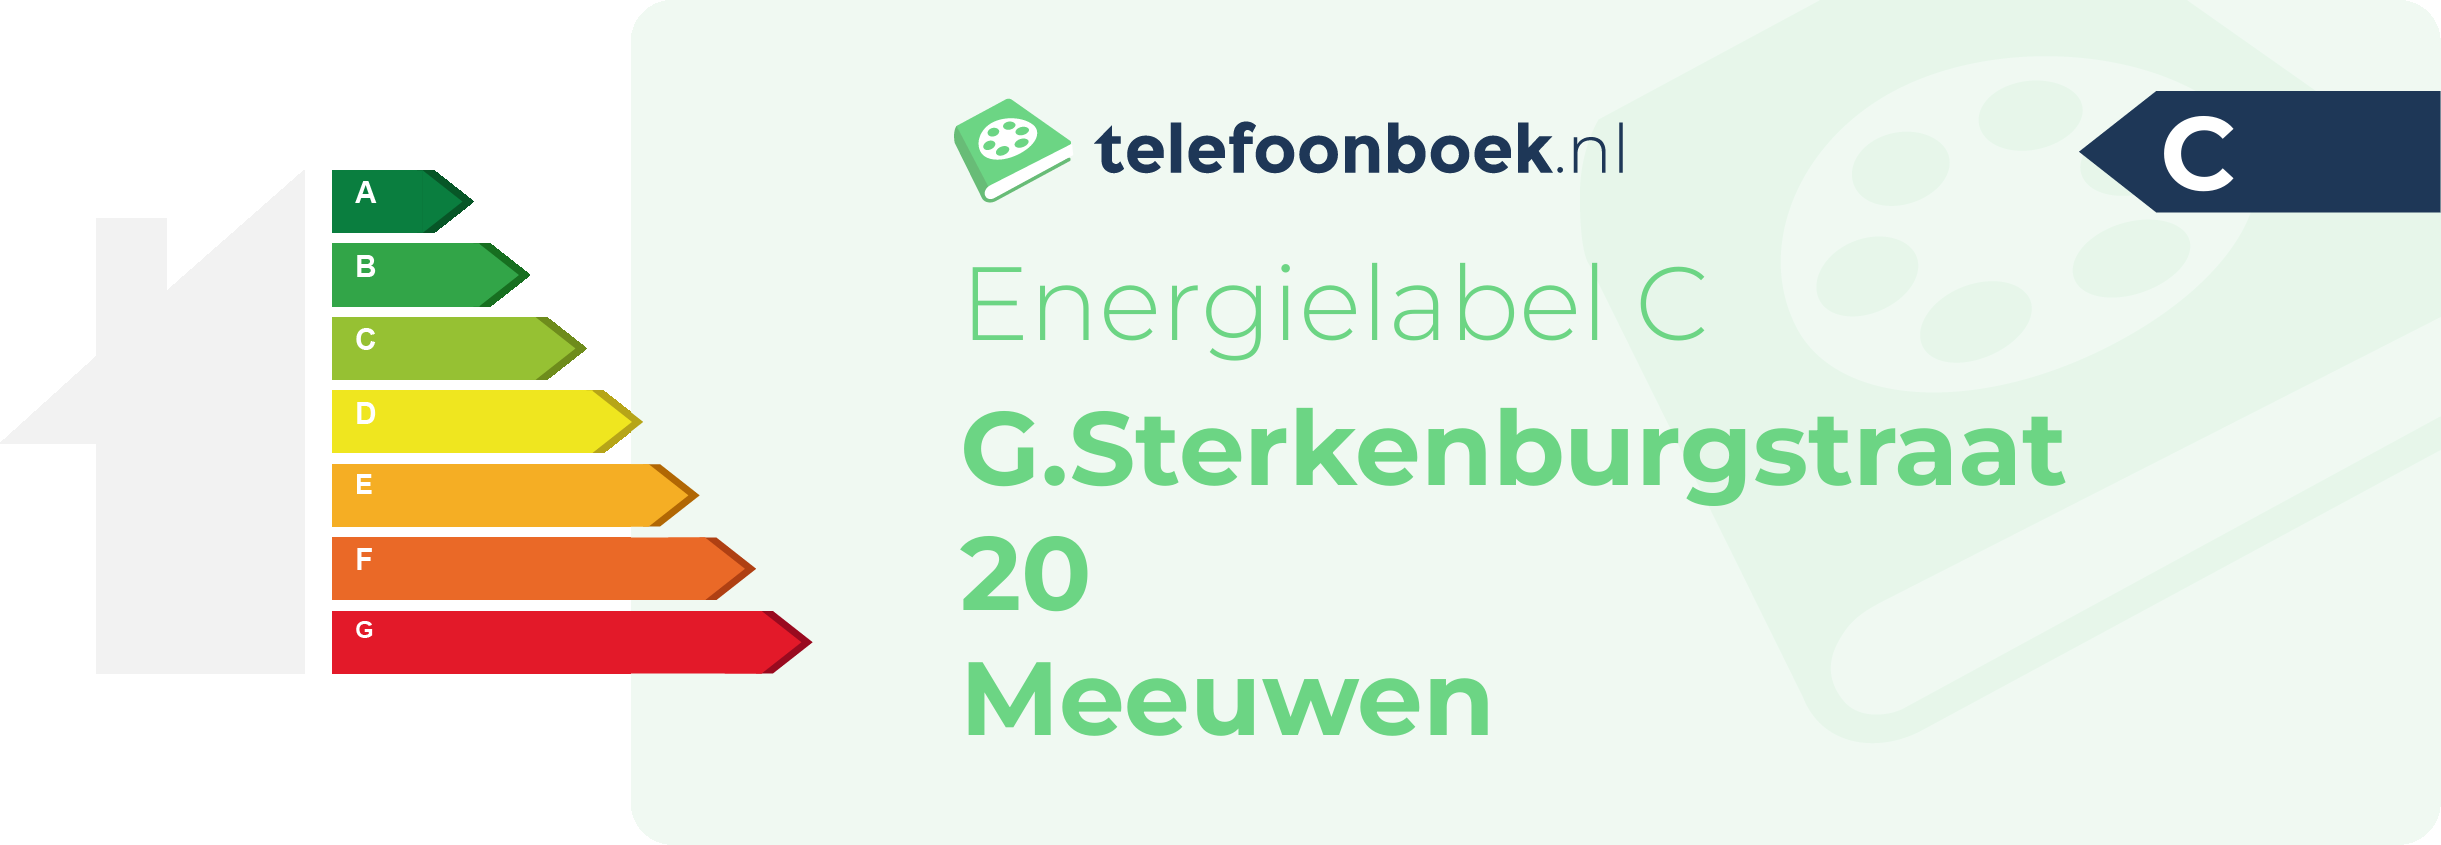 Energielabel G.Sterkenburgstraat 20 Meeuwen